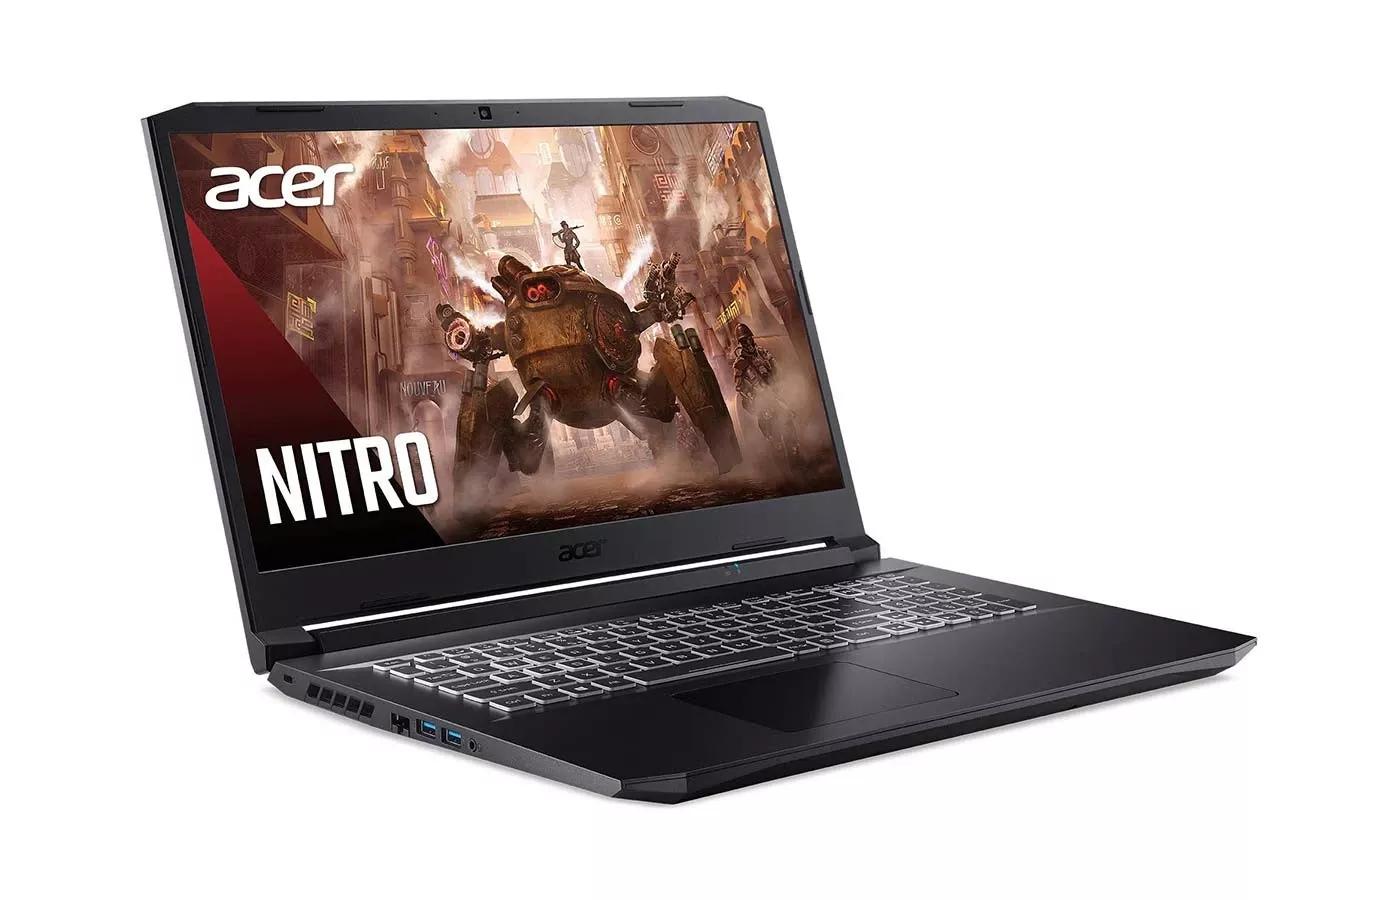 Acer Nitro 5 2021 AMD Ryzen 7 5800H | GTX 1650 | 8GB RAM | 512GB SSD | 15.6" FHD 144Hz display | 1 Year Warranty